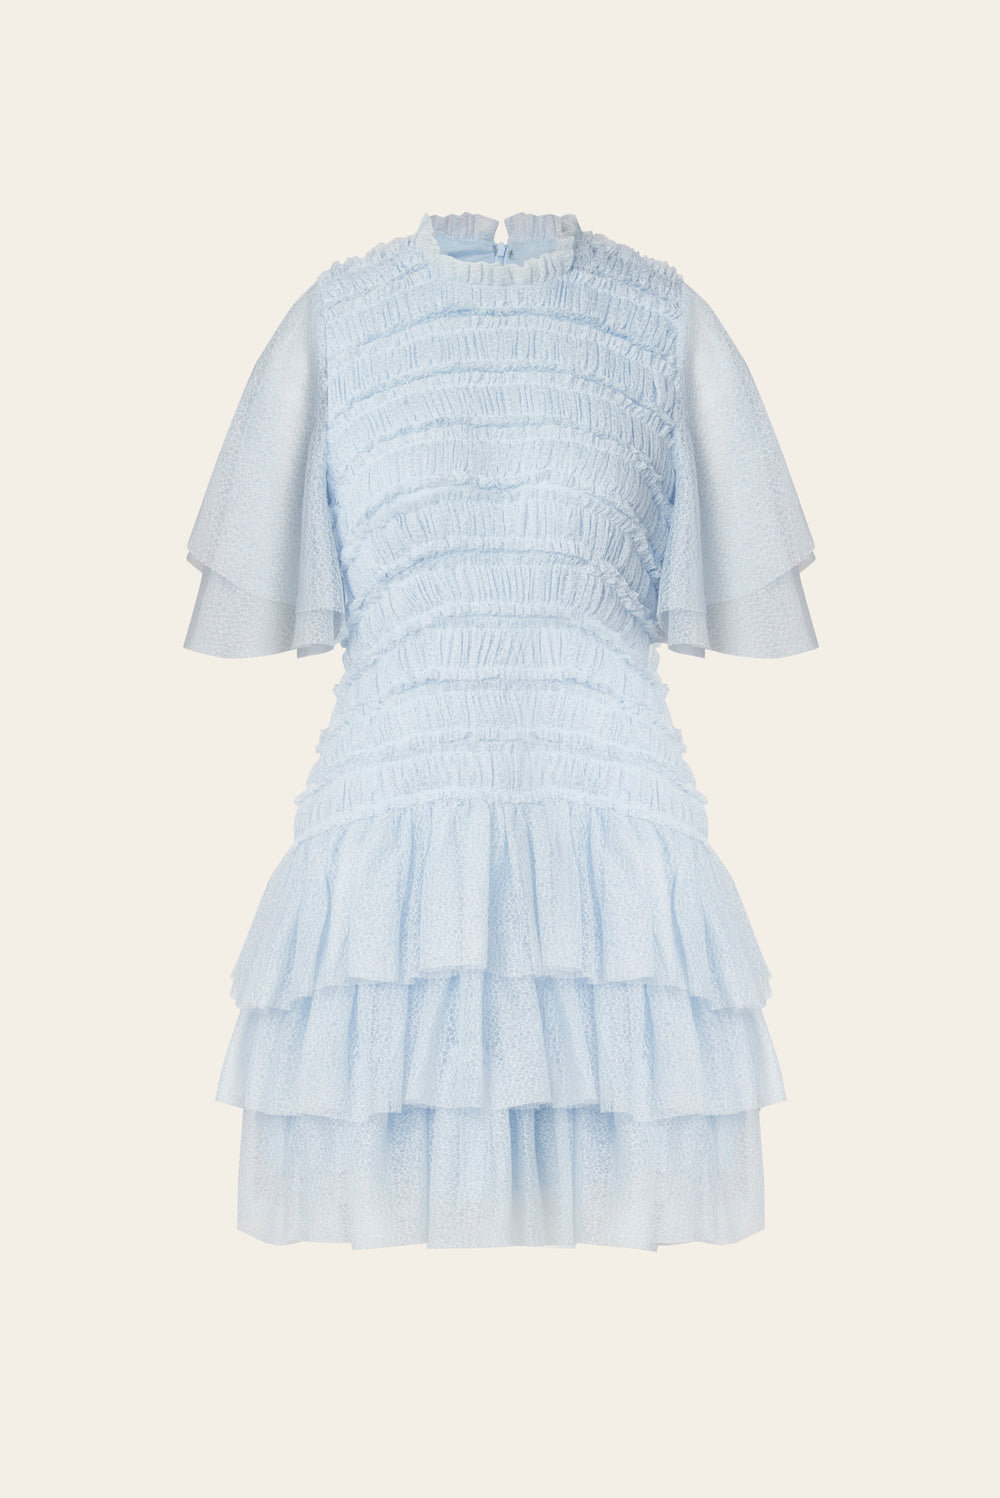 Malina Minnie short sleeve lace mini dress blue